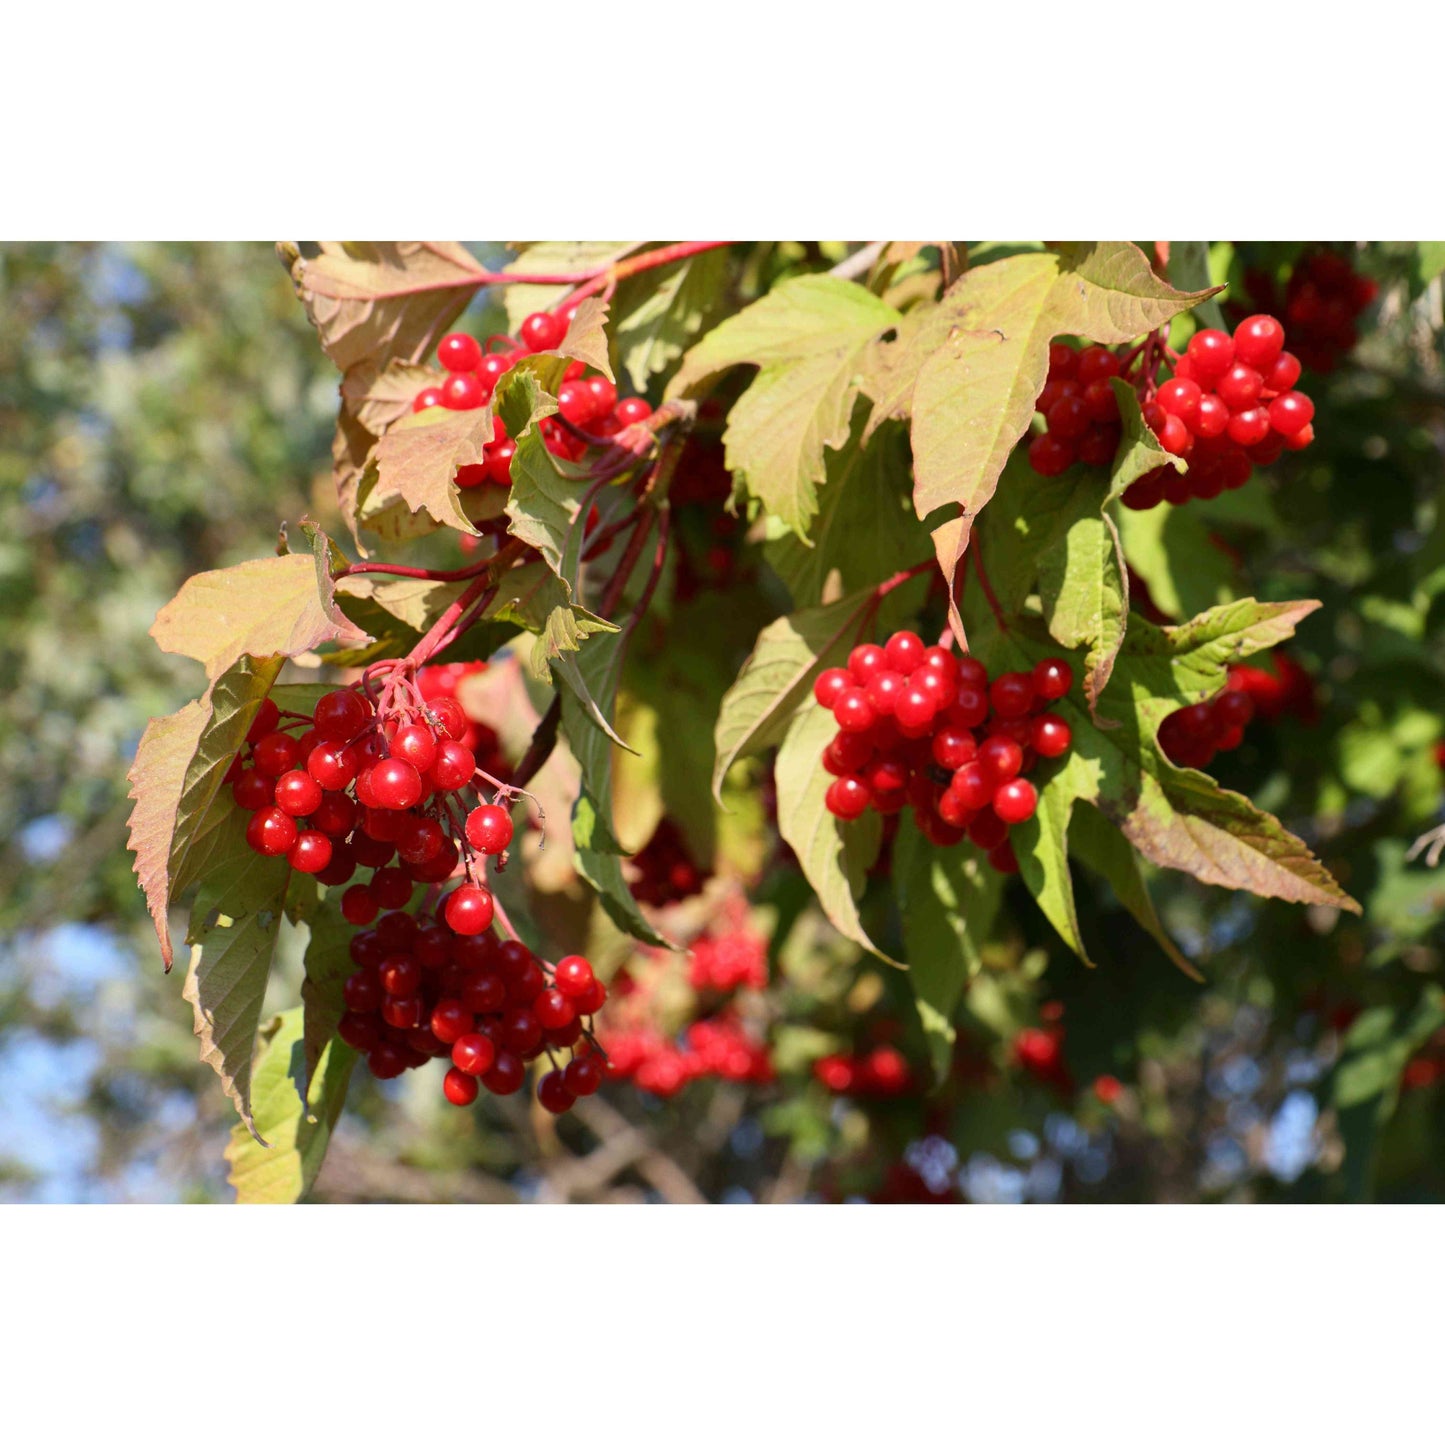 Viburnum trilobum (Highbush Cranberry Viburnum)  Natural Communities LLC